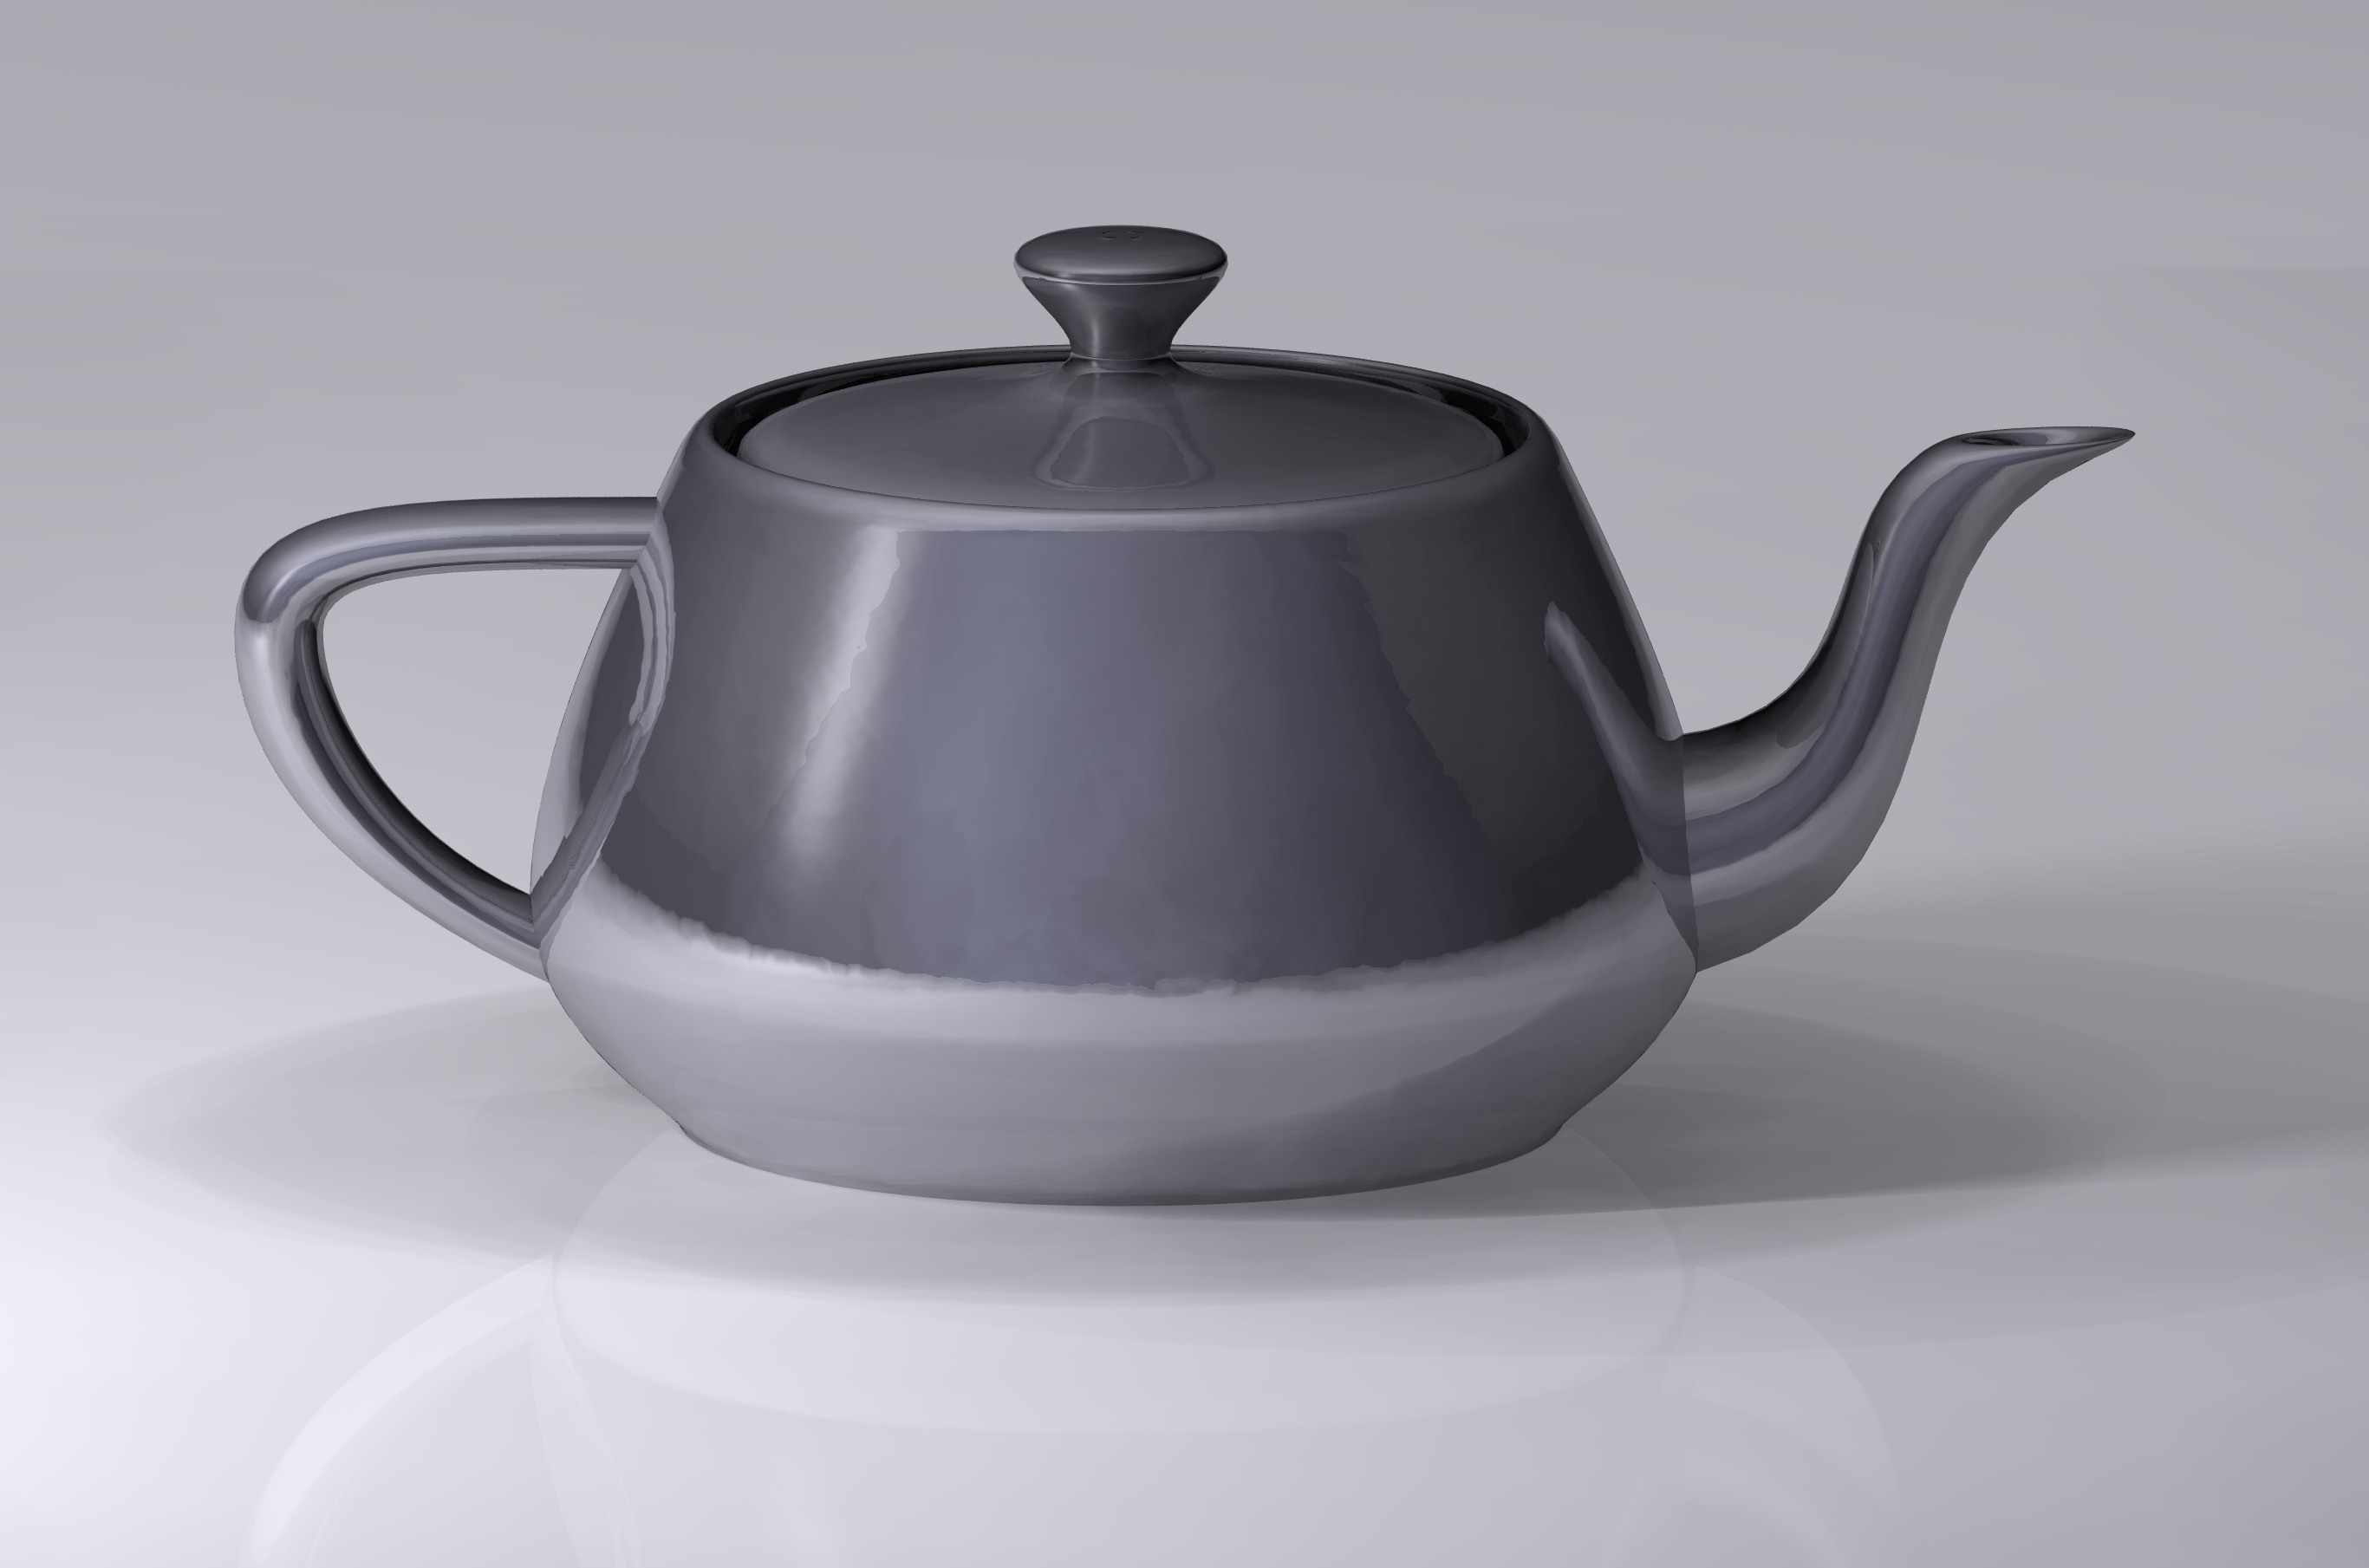 The Utah teapot